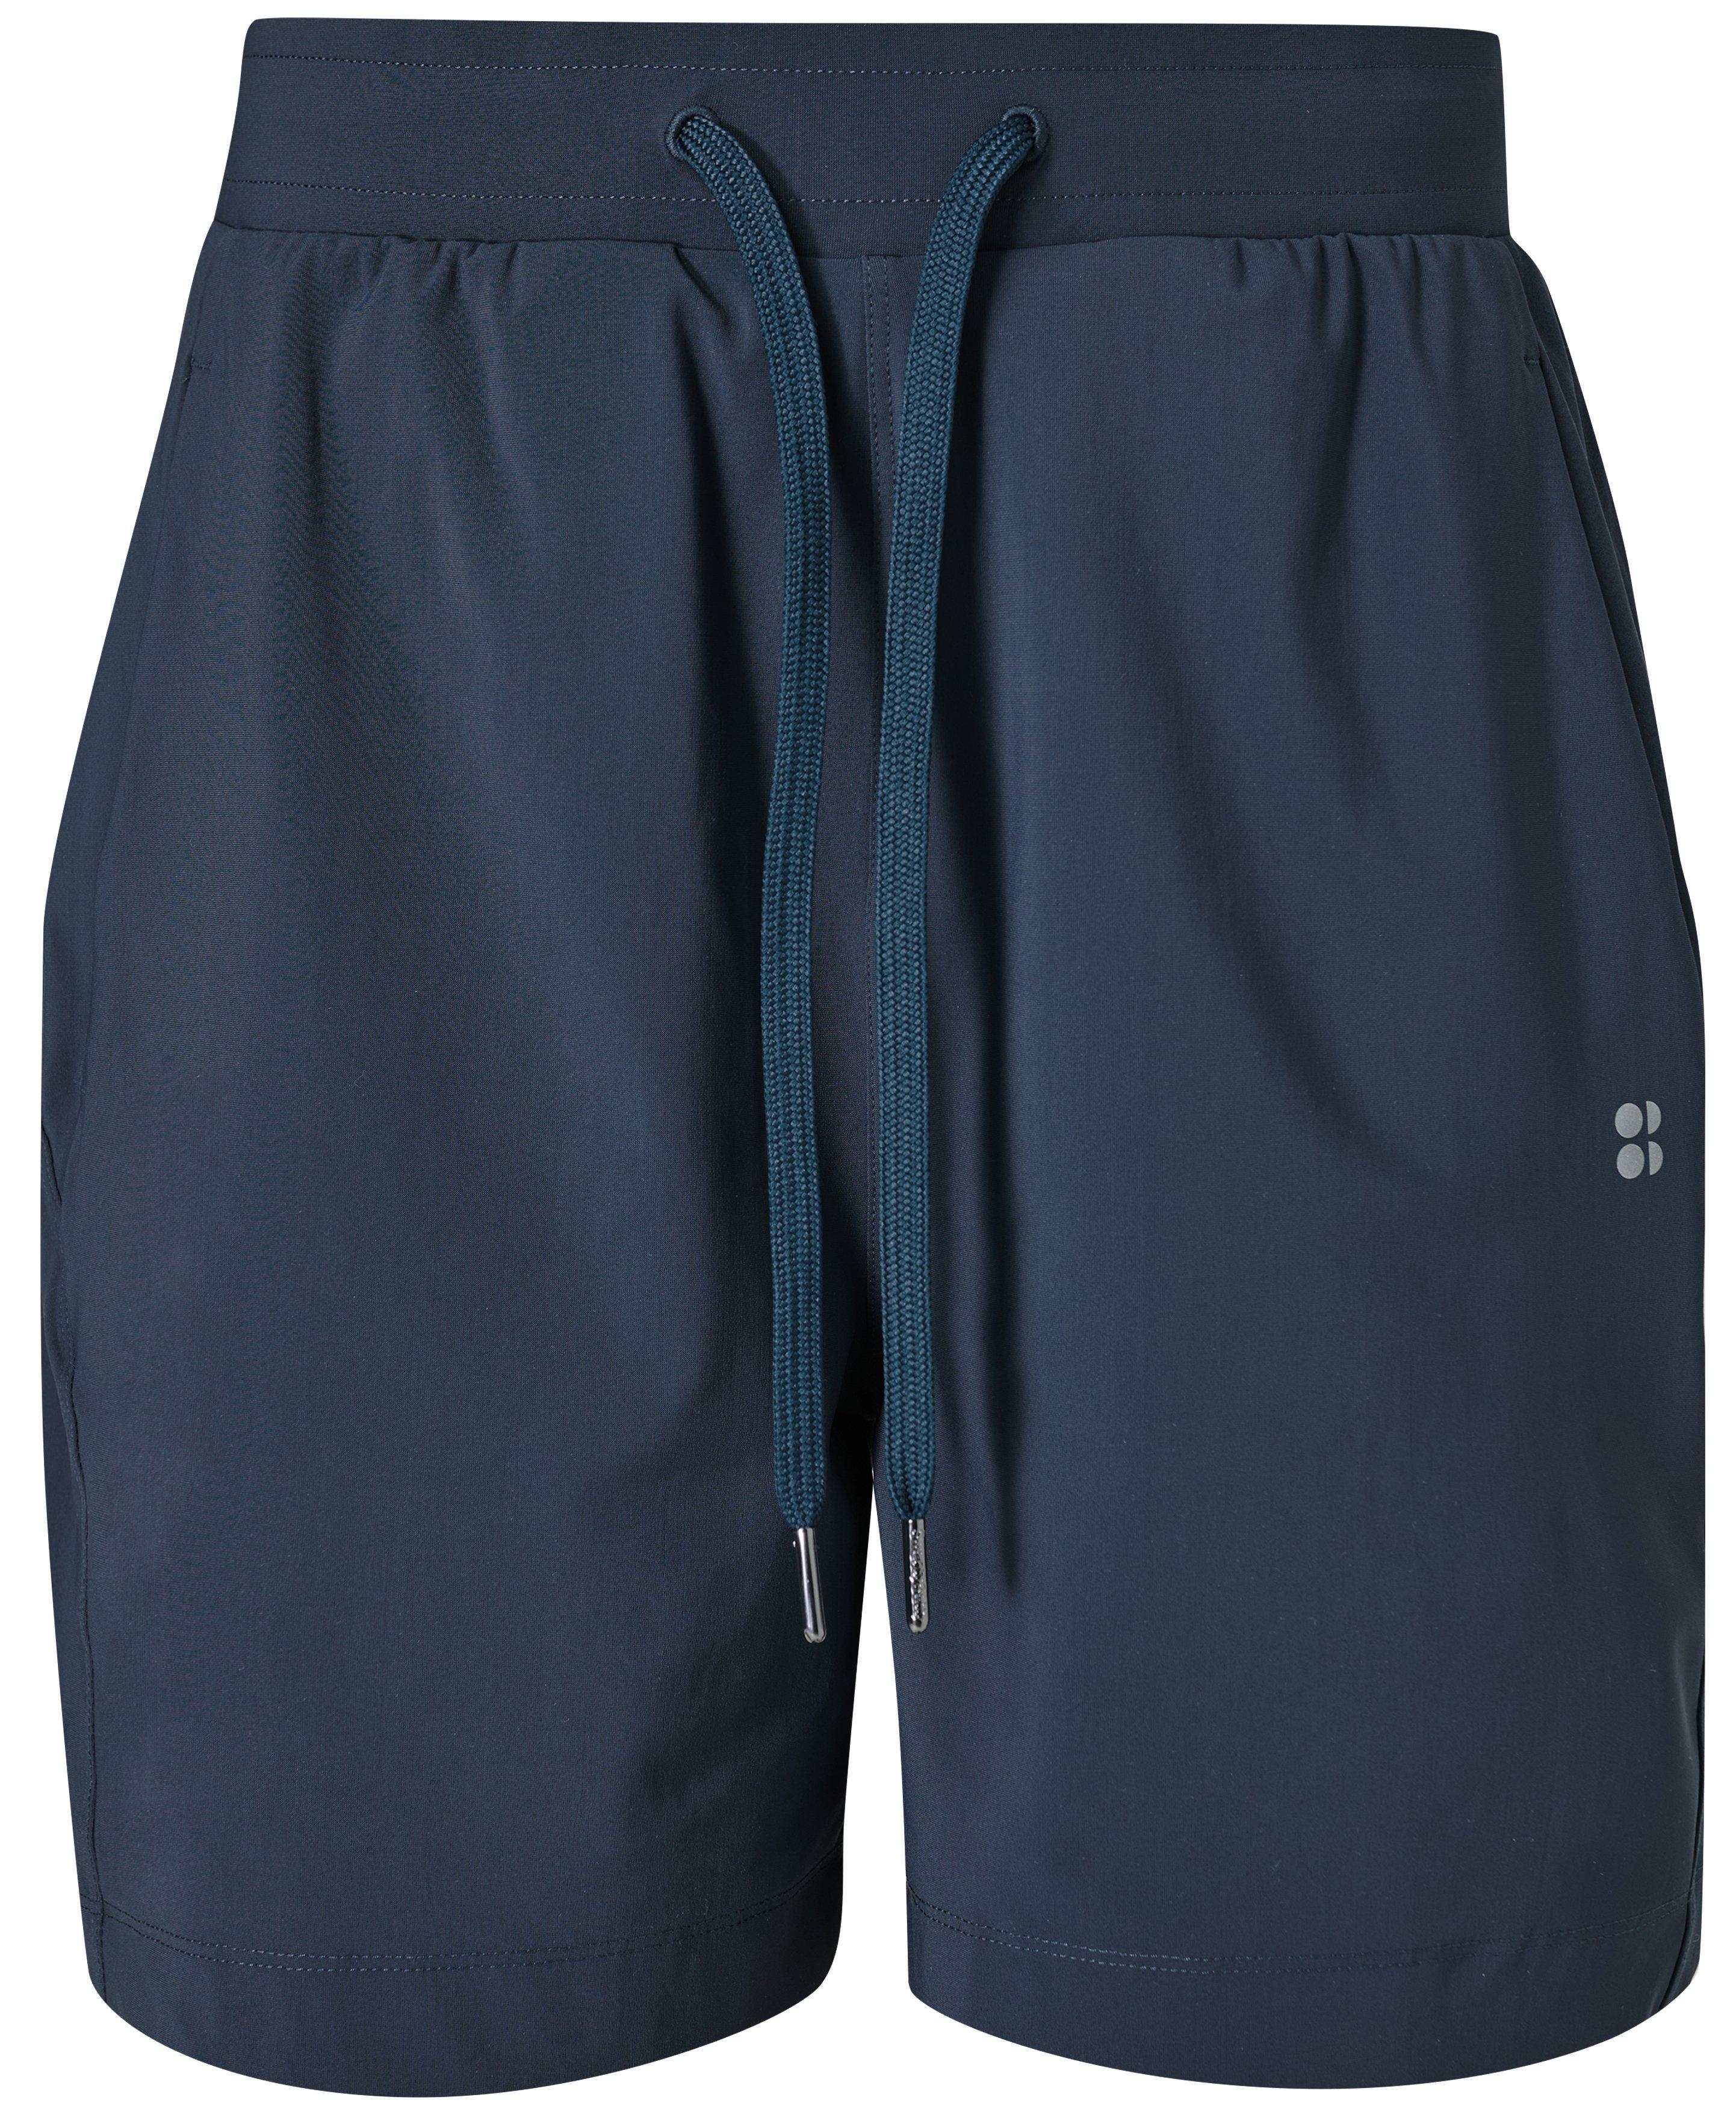 Explorer Shorts - Navy Blue, Women's Shorts + Skorts